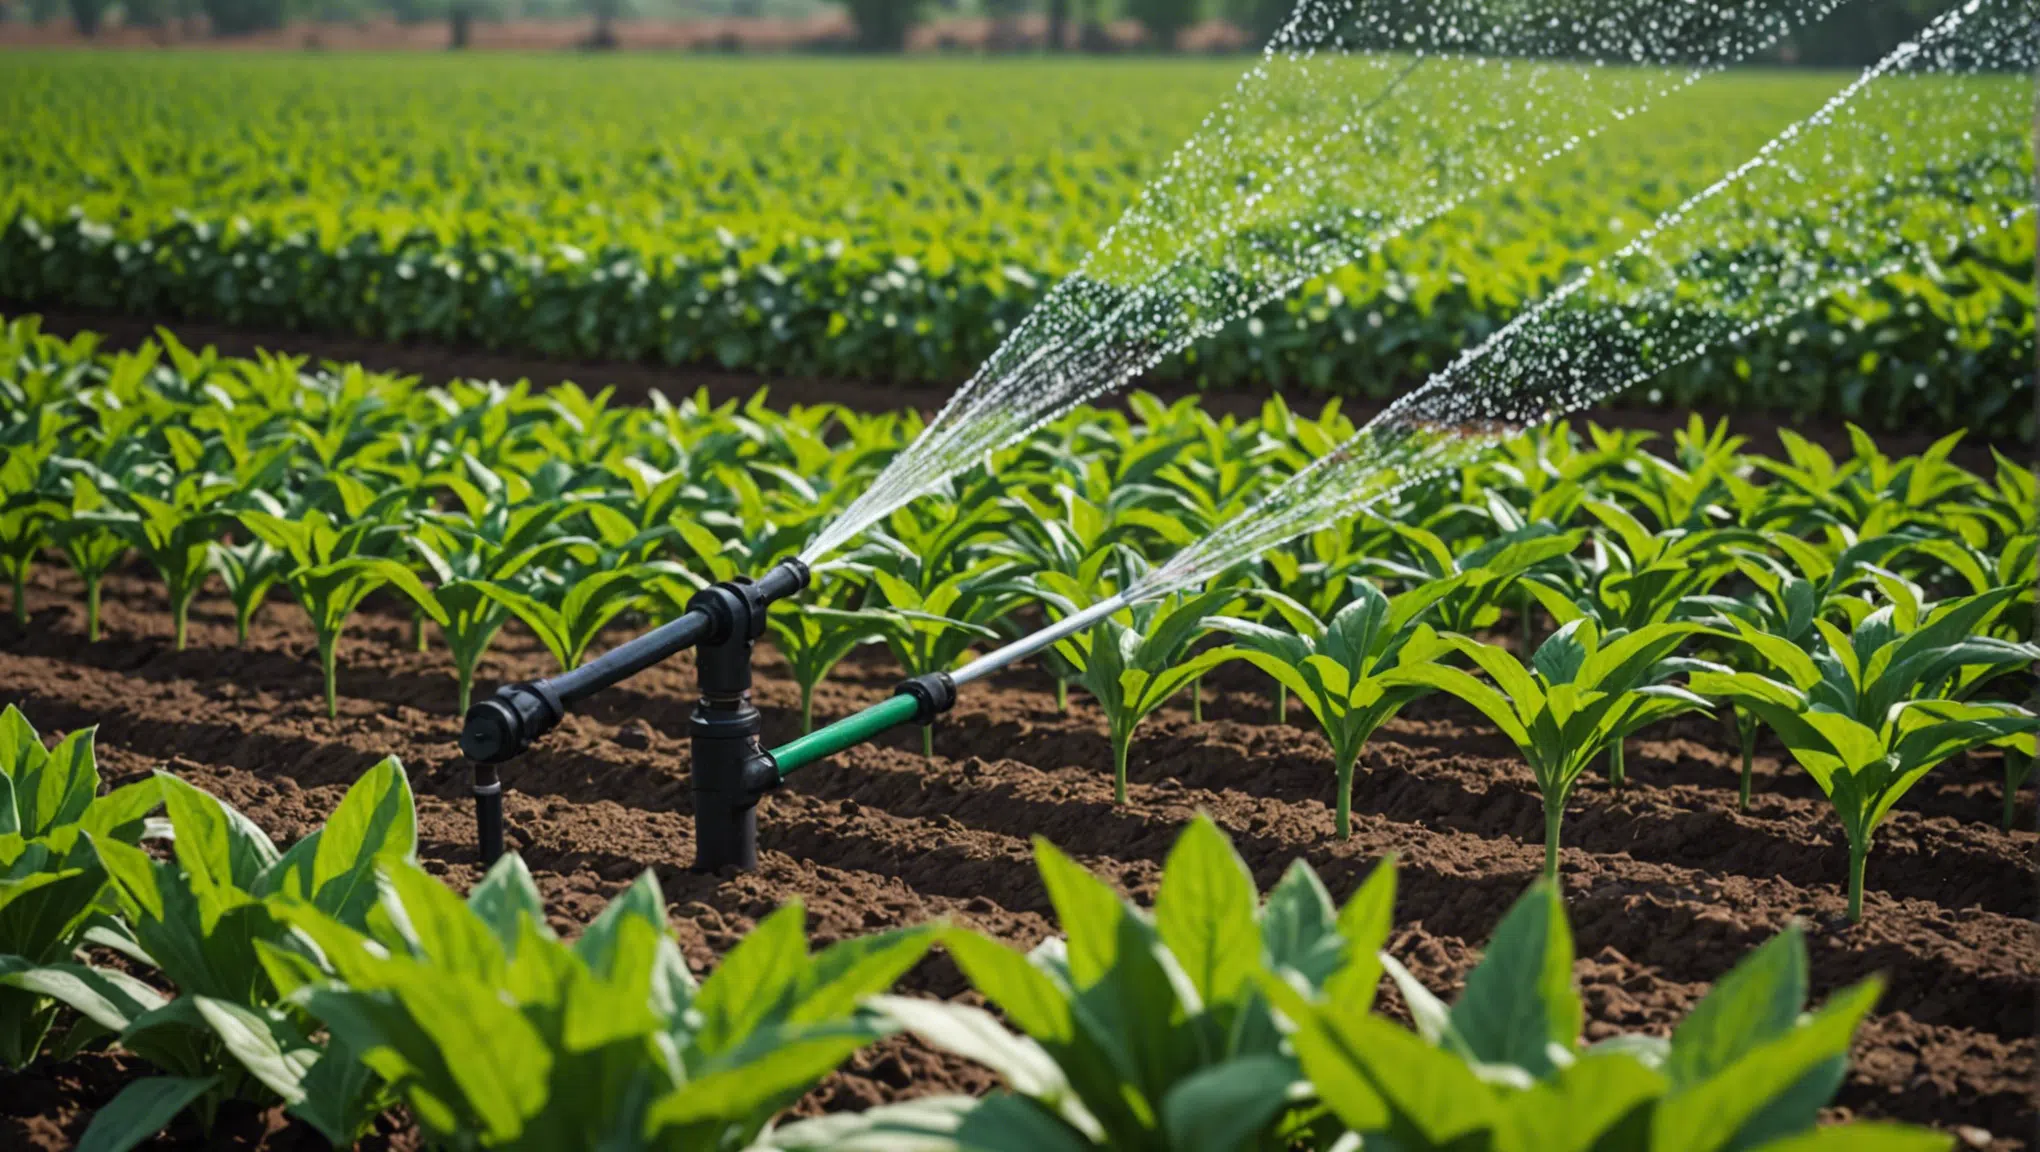 découvrez les bénéfices de l'irrigation goutte à goutte en agriculture et comment elle améliore la productivité et la durabilité des cultures.